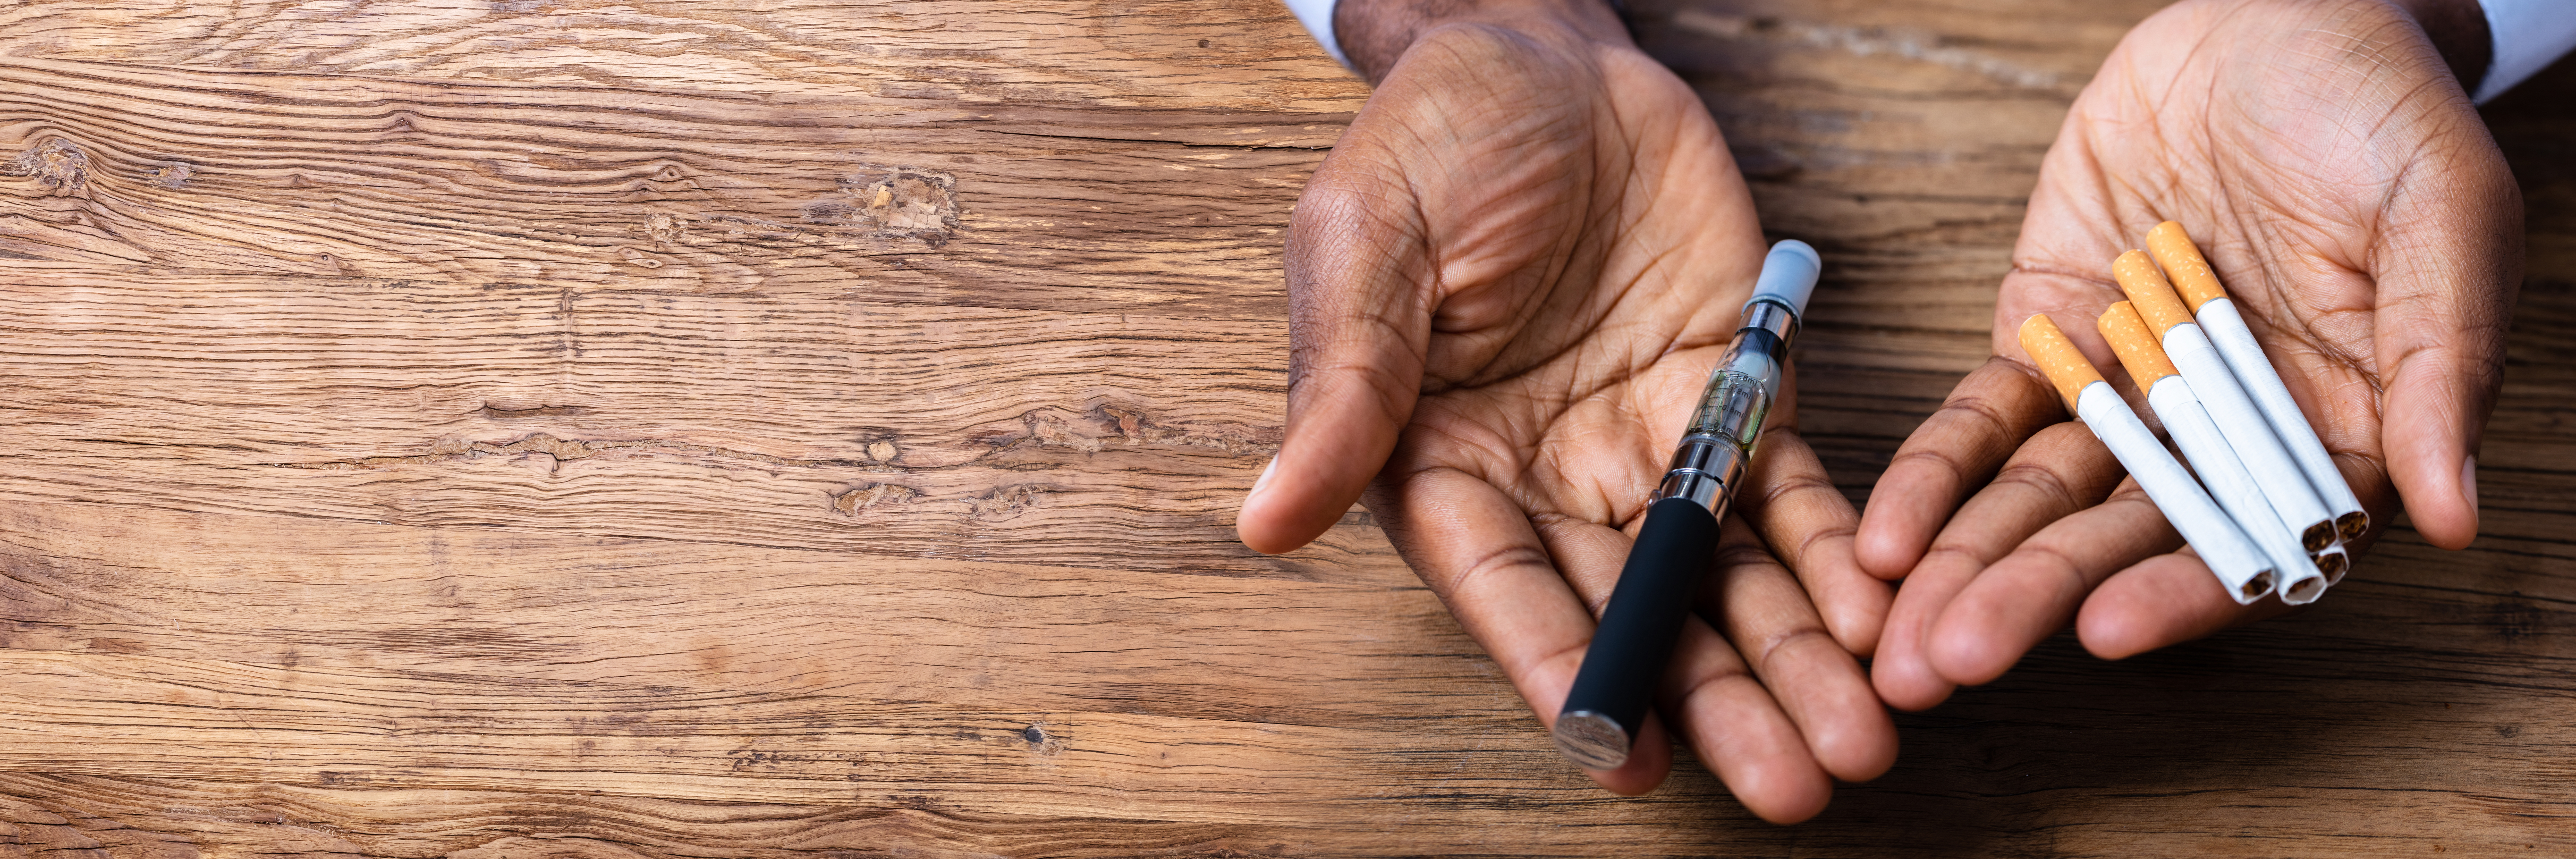 Farbige Männerhände halten eine E-Zigarette und vier Zigaretten über einem hölzernen Untergrund